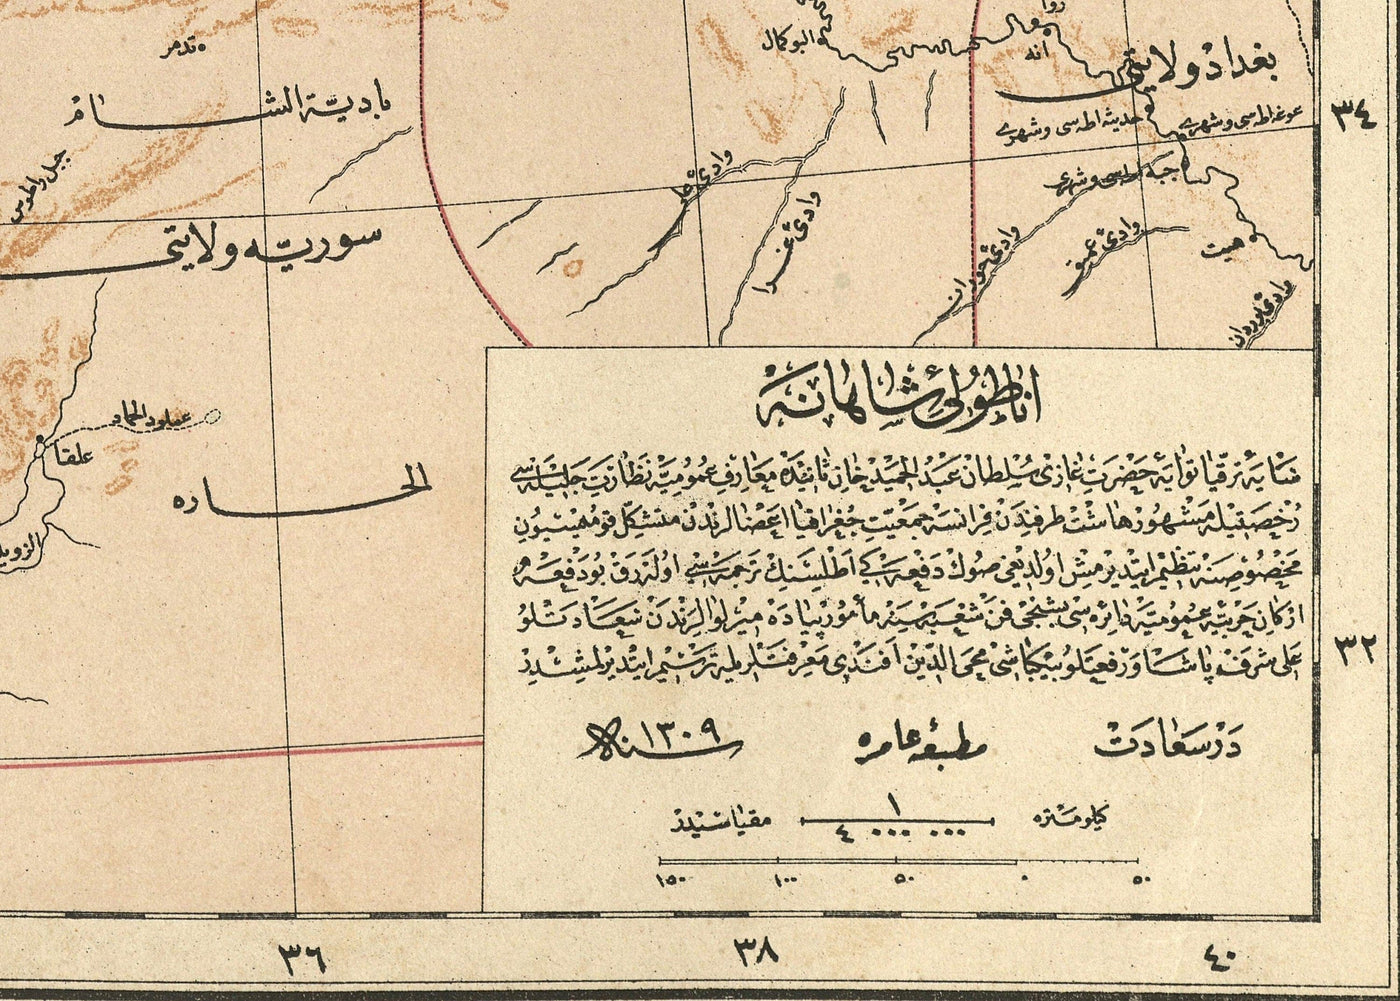 Alte arabische Karte der Türkei von Hafız Ali Eşref, 1893 - Zypern, Syrien, Palästina, Osmanisches Reich, Schwarzes Meer, Anatolien